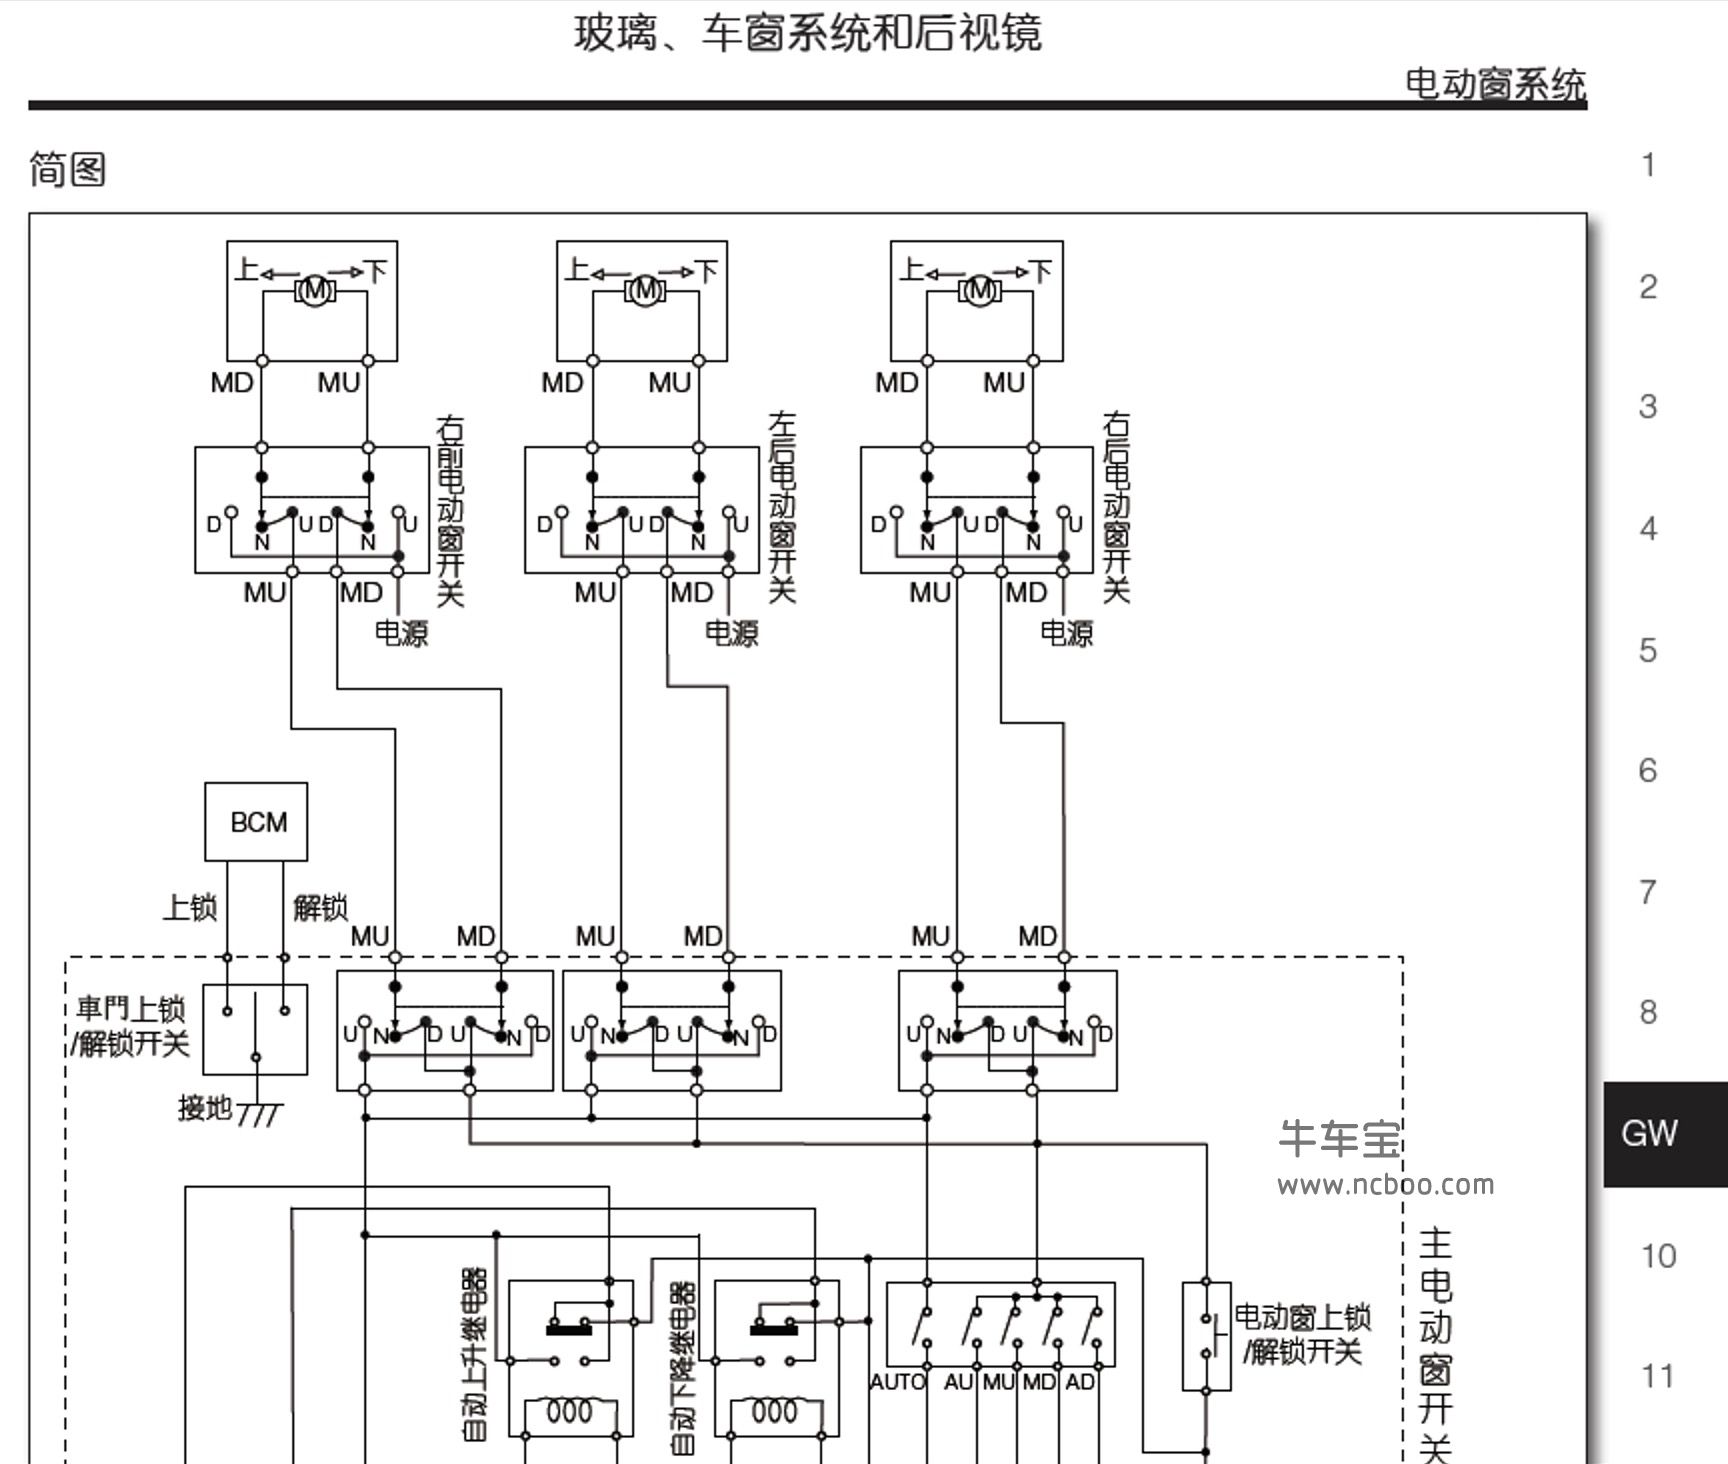 2015-2016款纳智捷大7新款原厂维修手册(包含电路图资料)下载